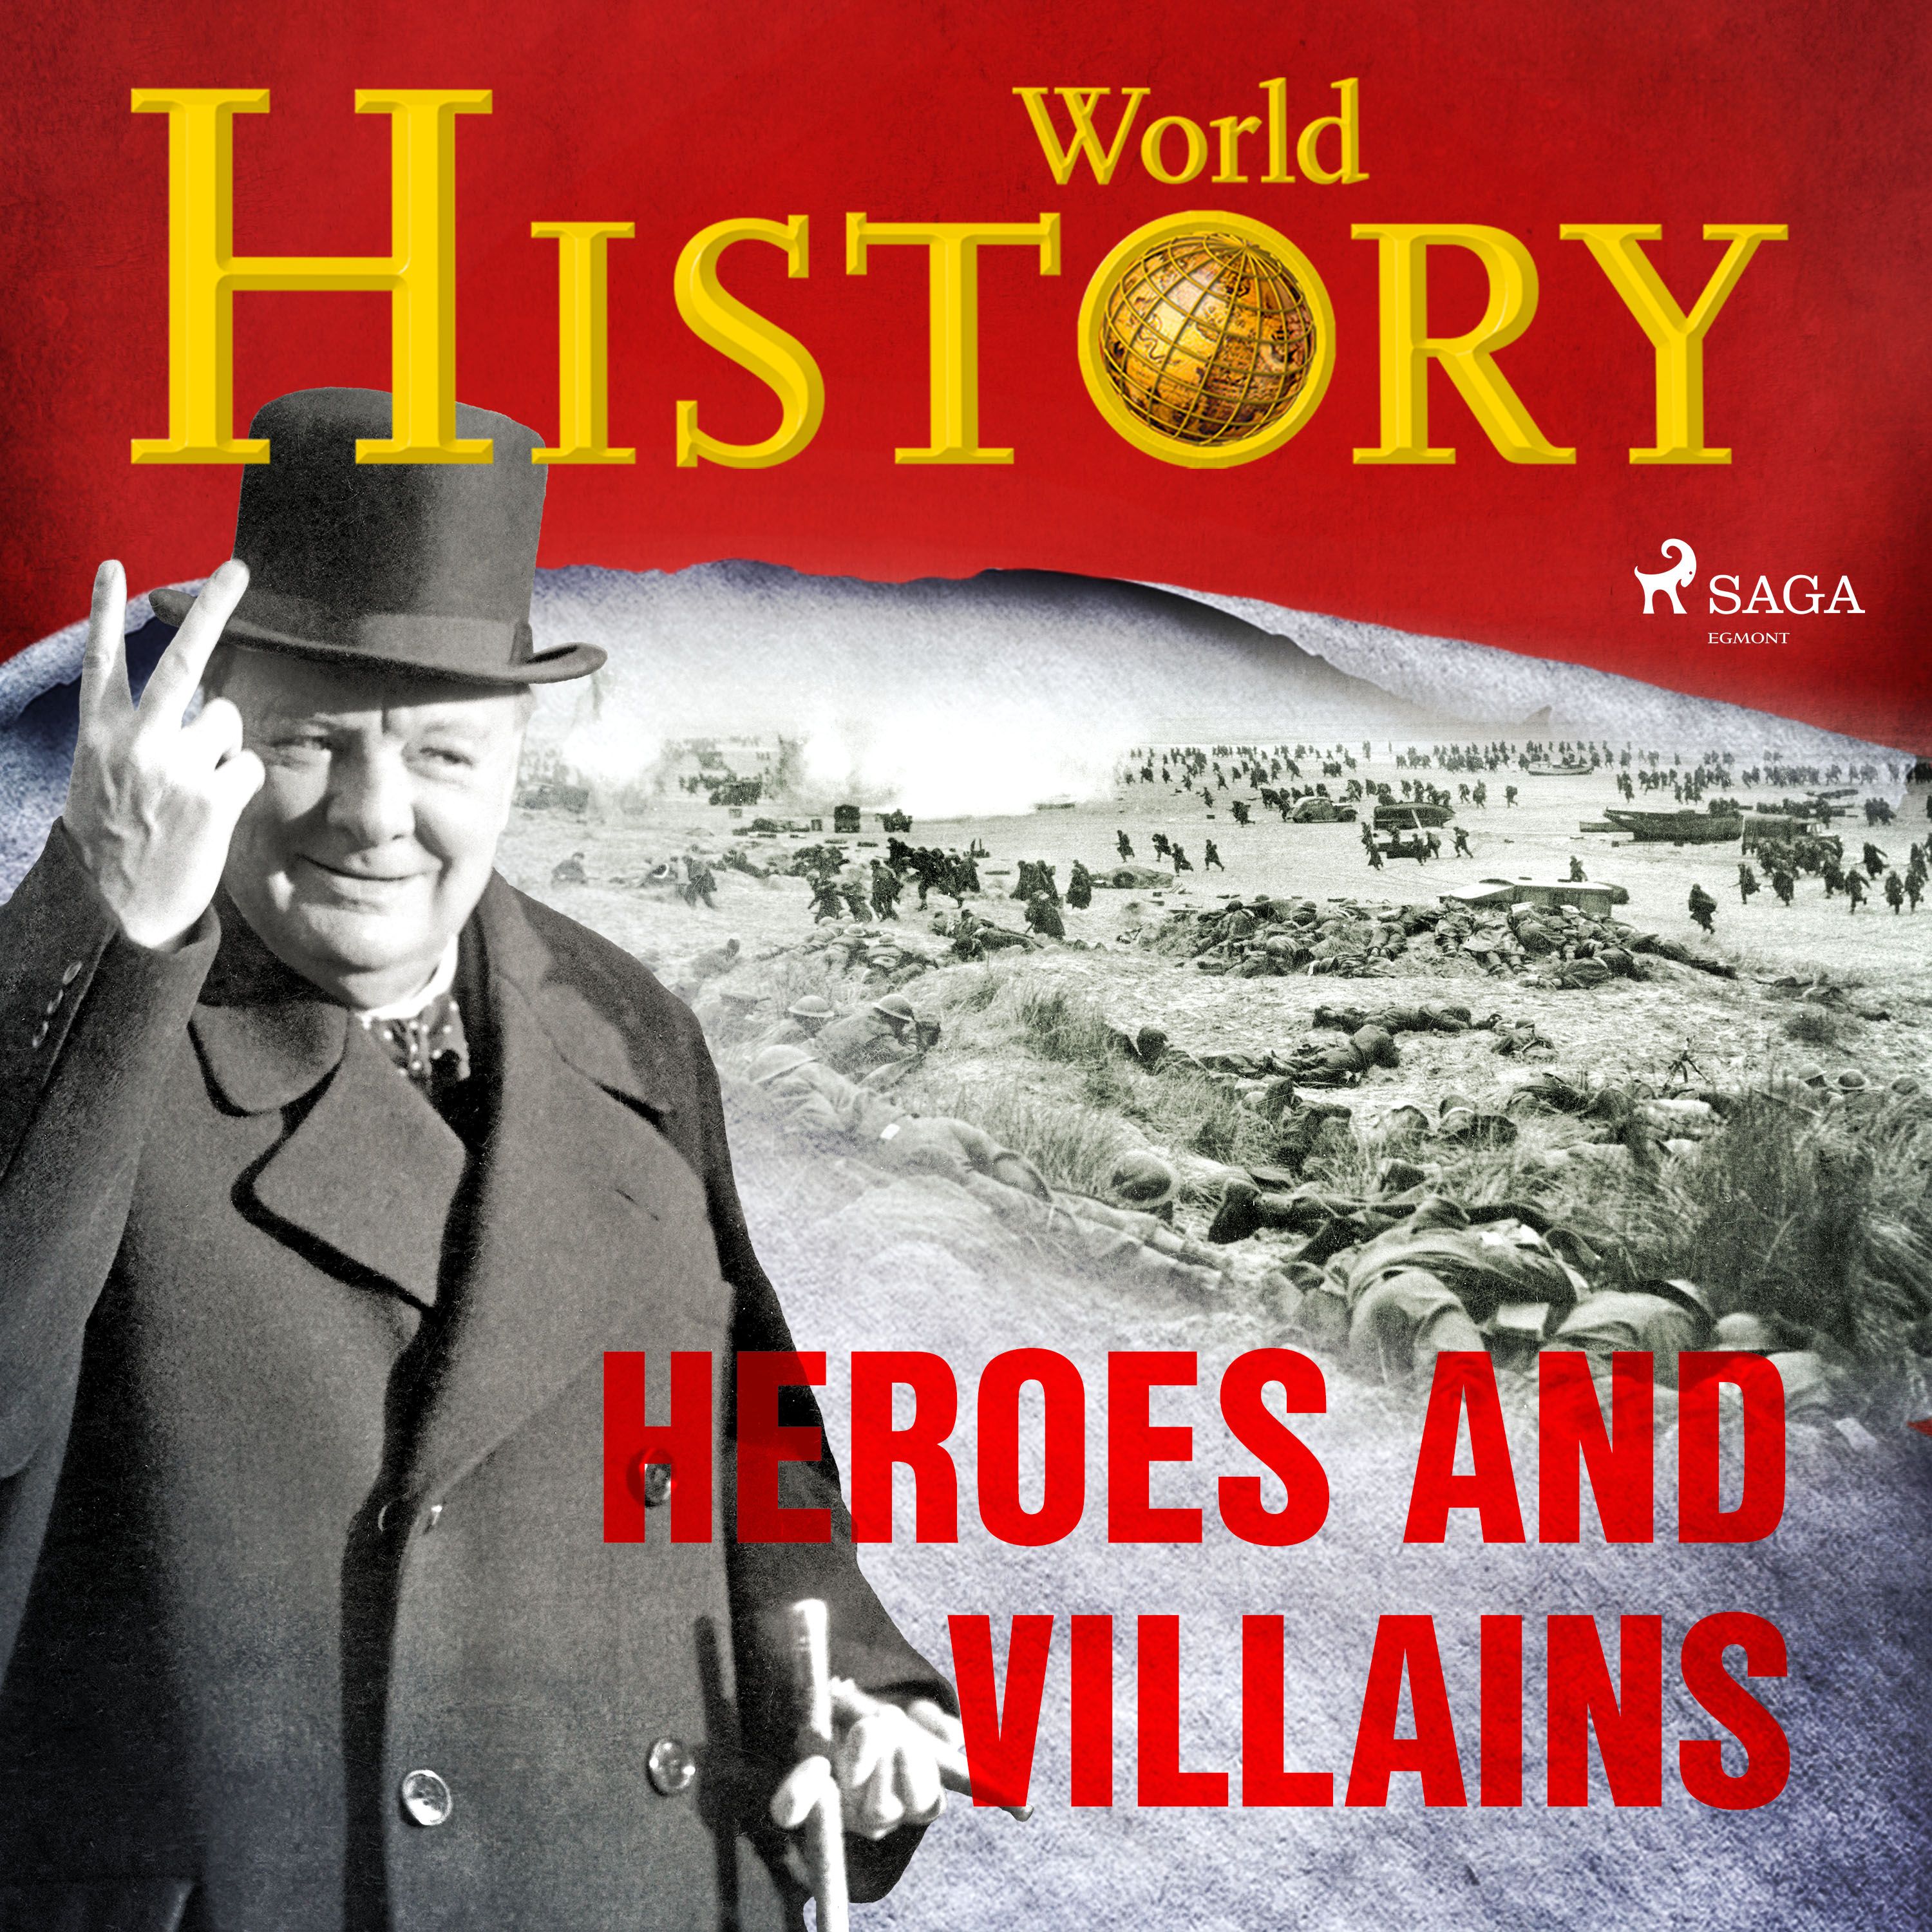 Heroes and Villains, lydbog af World History